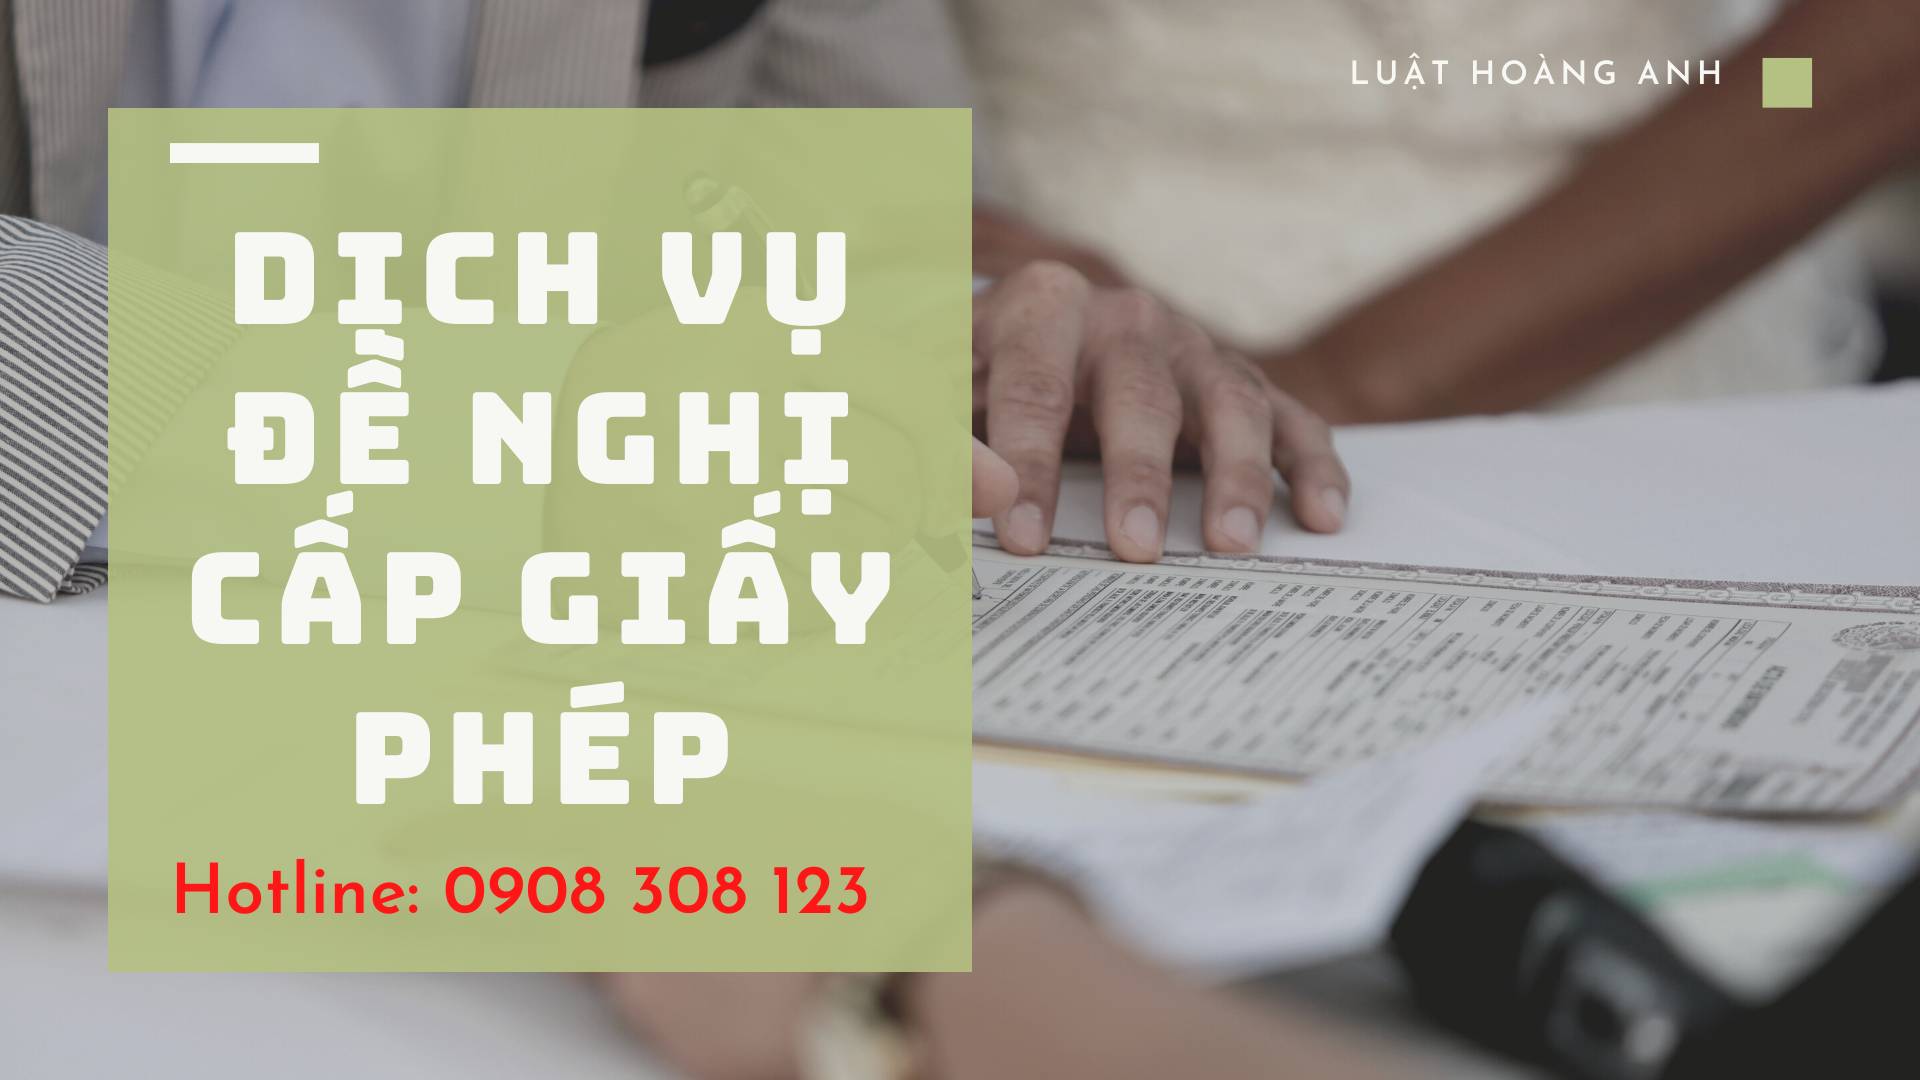 Dịch vụ xin giấy phép quảng cáo thực phẩm nhanh tại tỉnh Quảng Nam